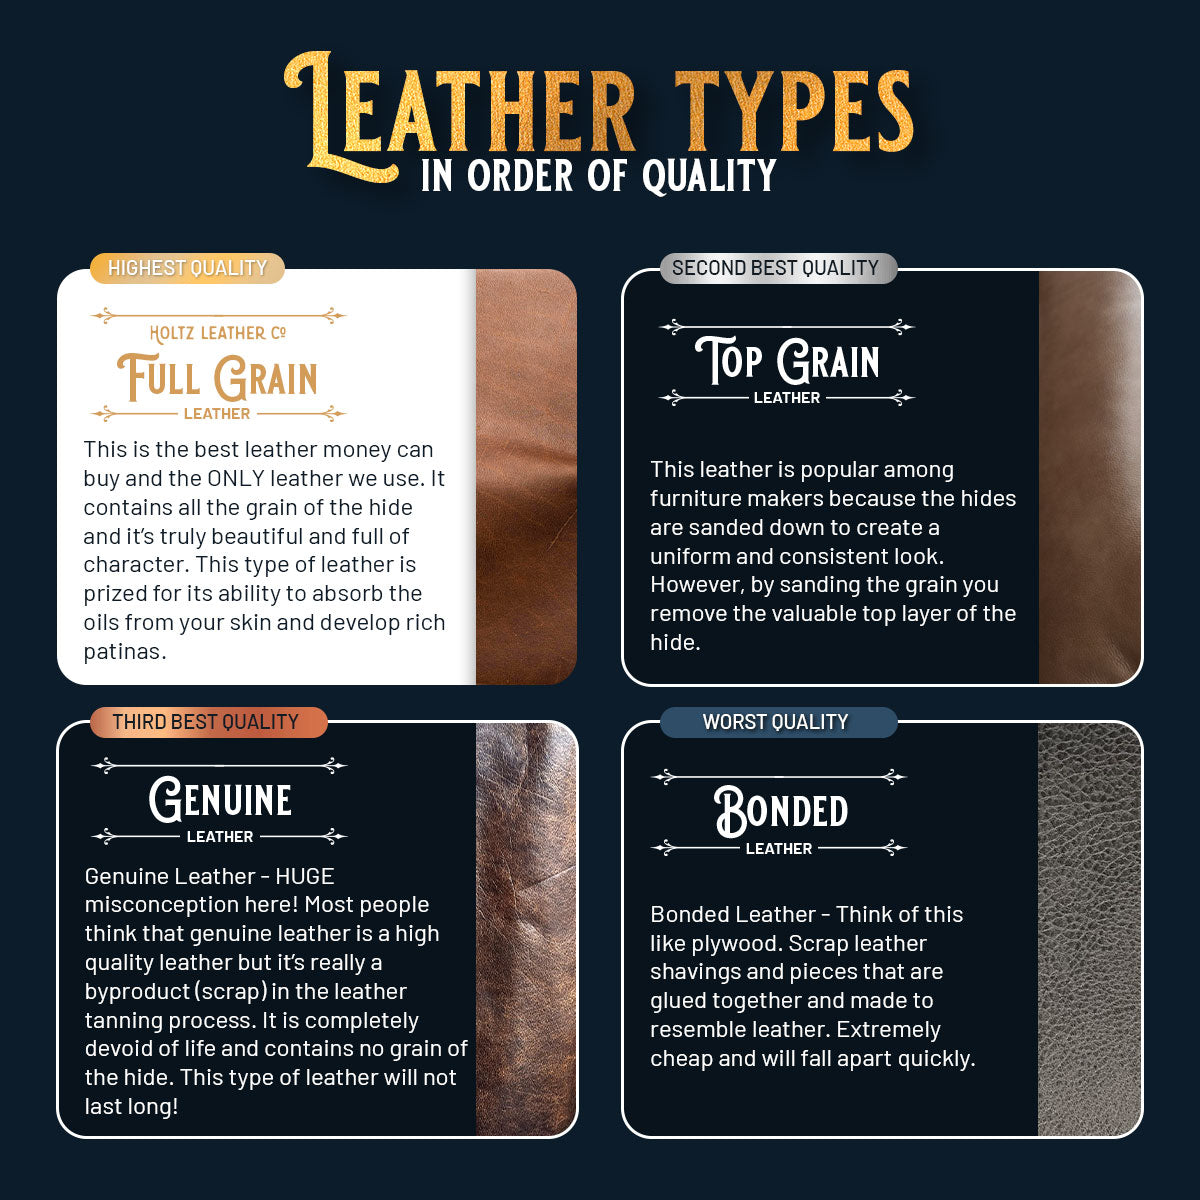 The Cecilia Fine Leather Envelope Purse